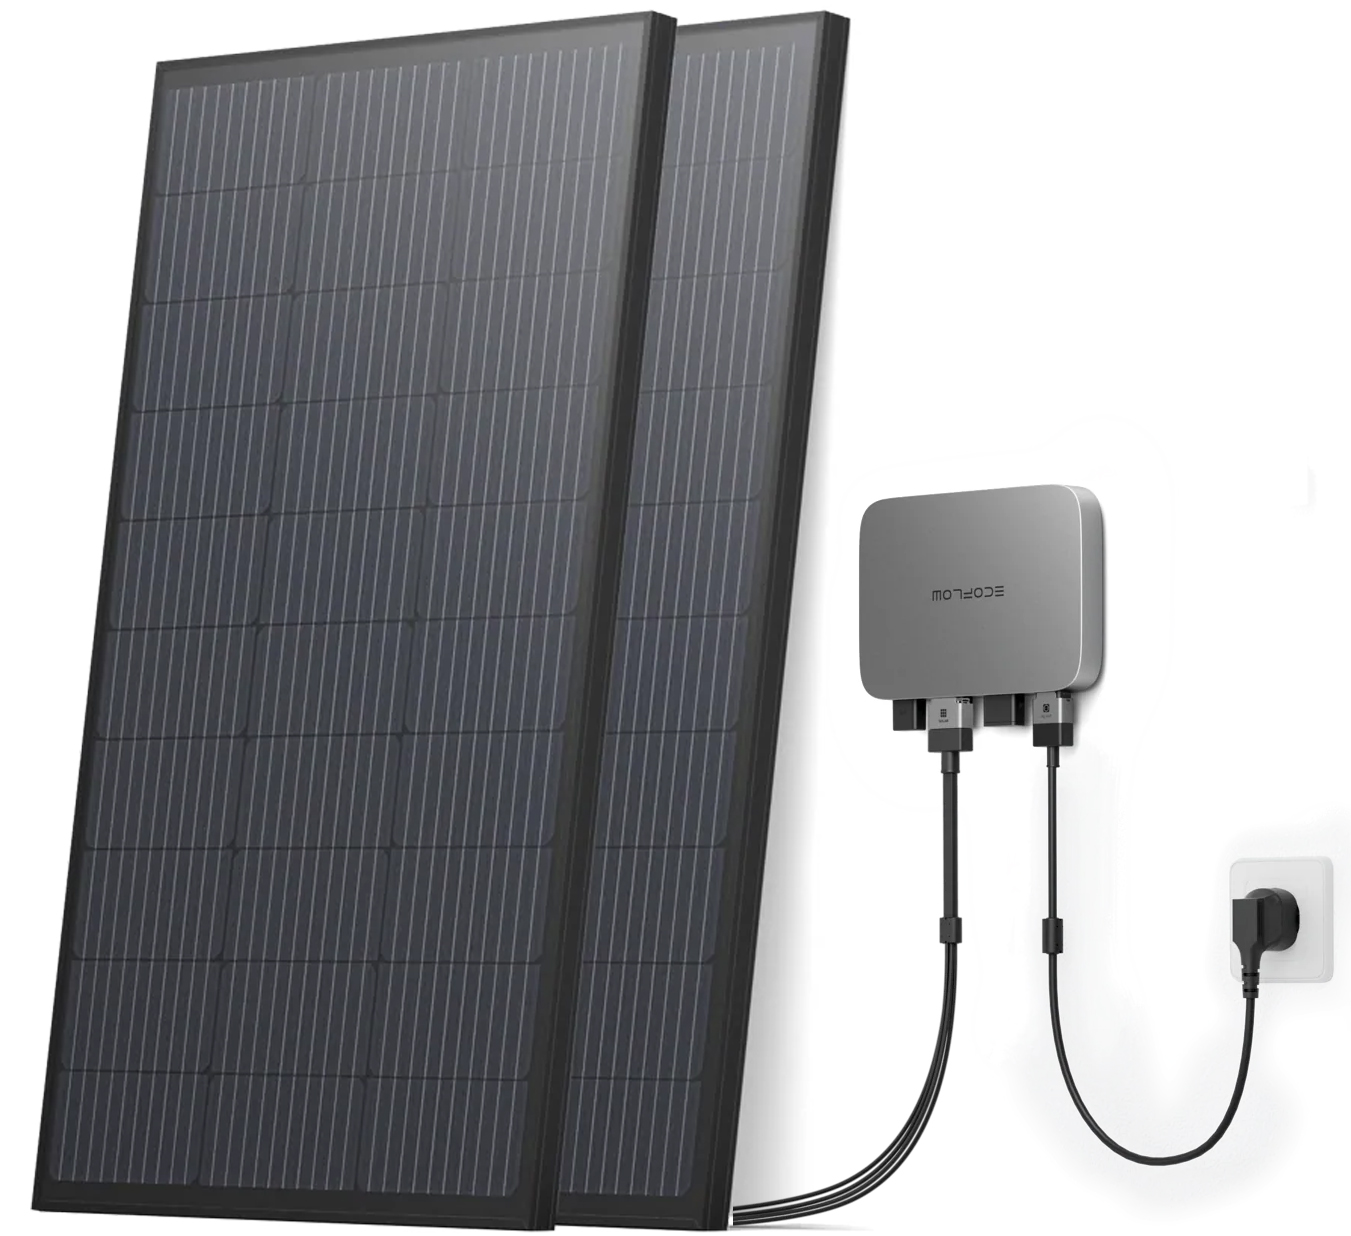 Система резервного живлення EcoFlow PowerStream - микроинвертор 600W + 2 x 400W стационарные солнечные панели